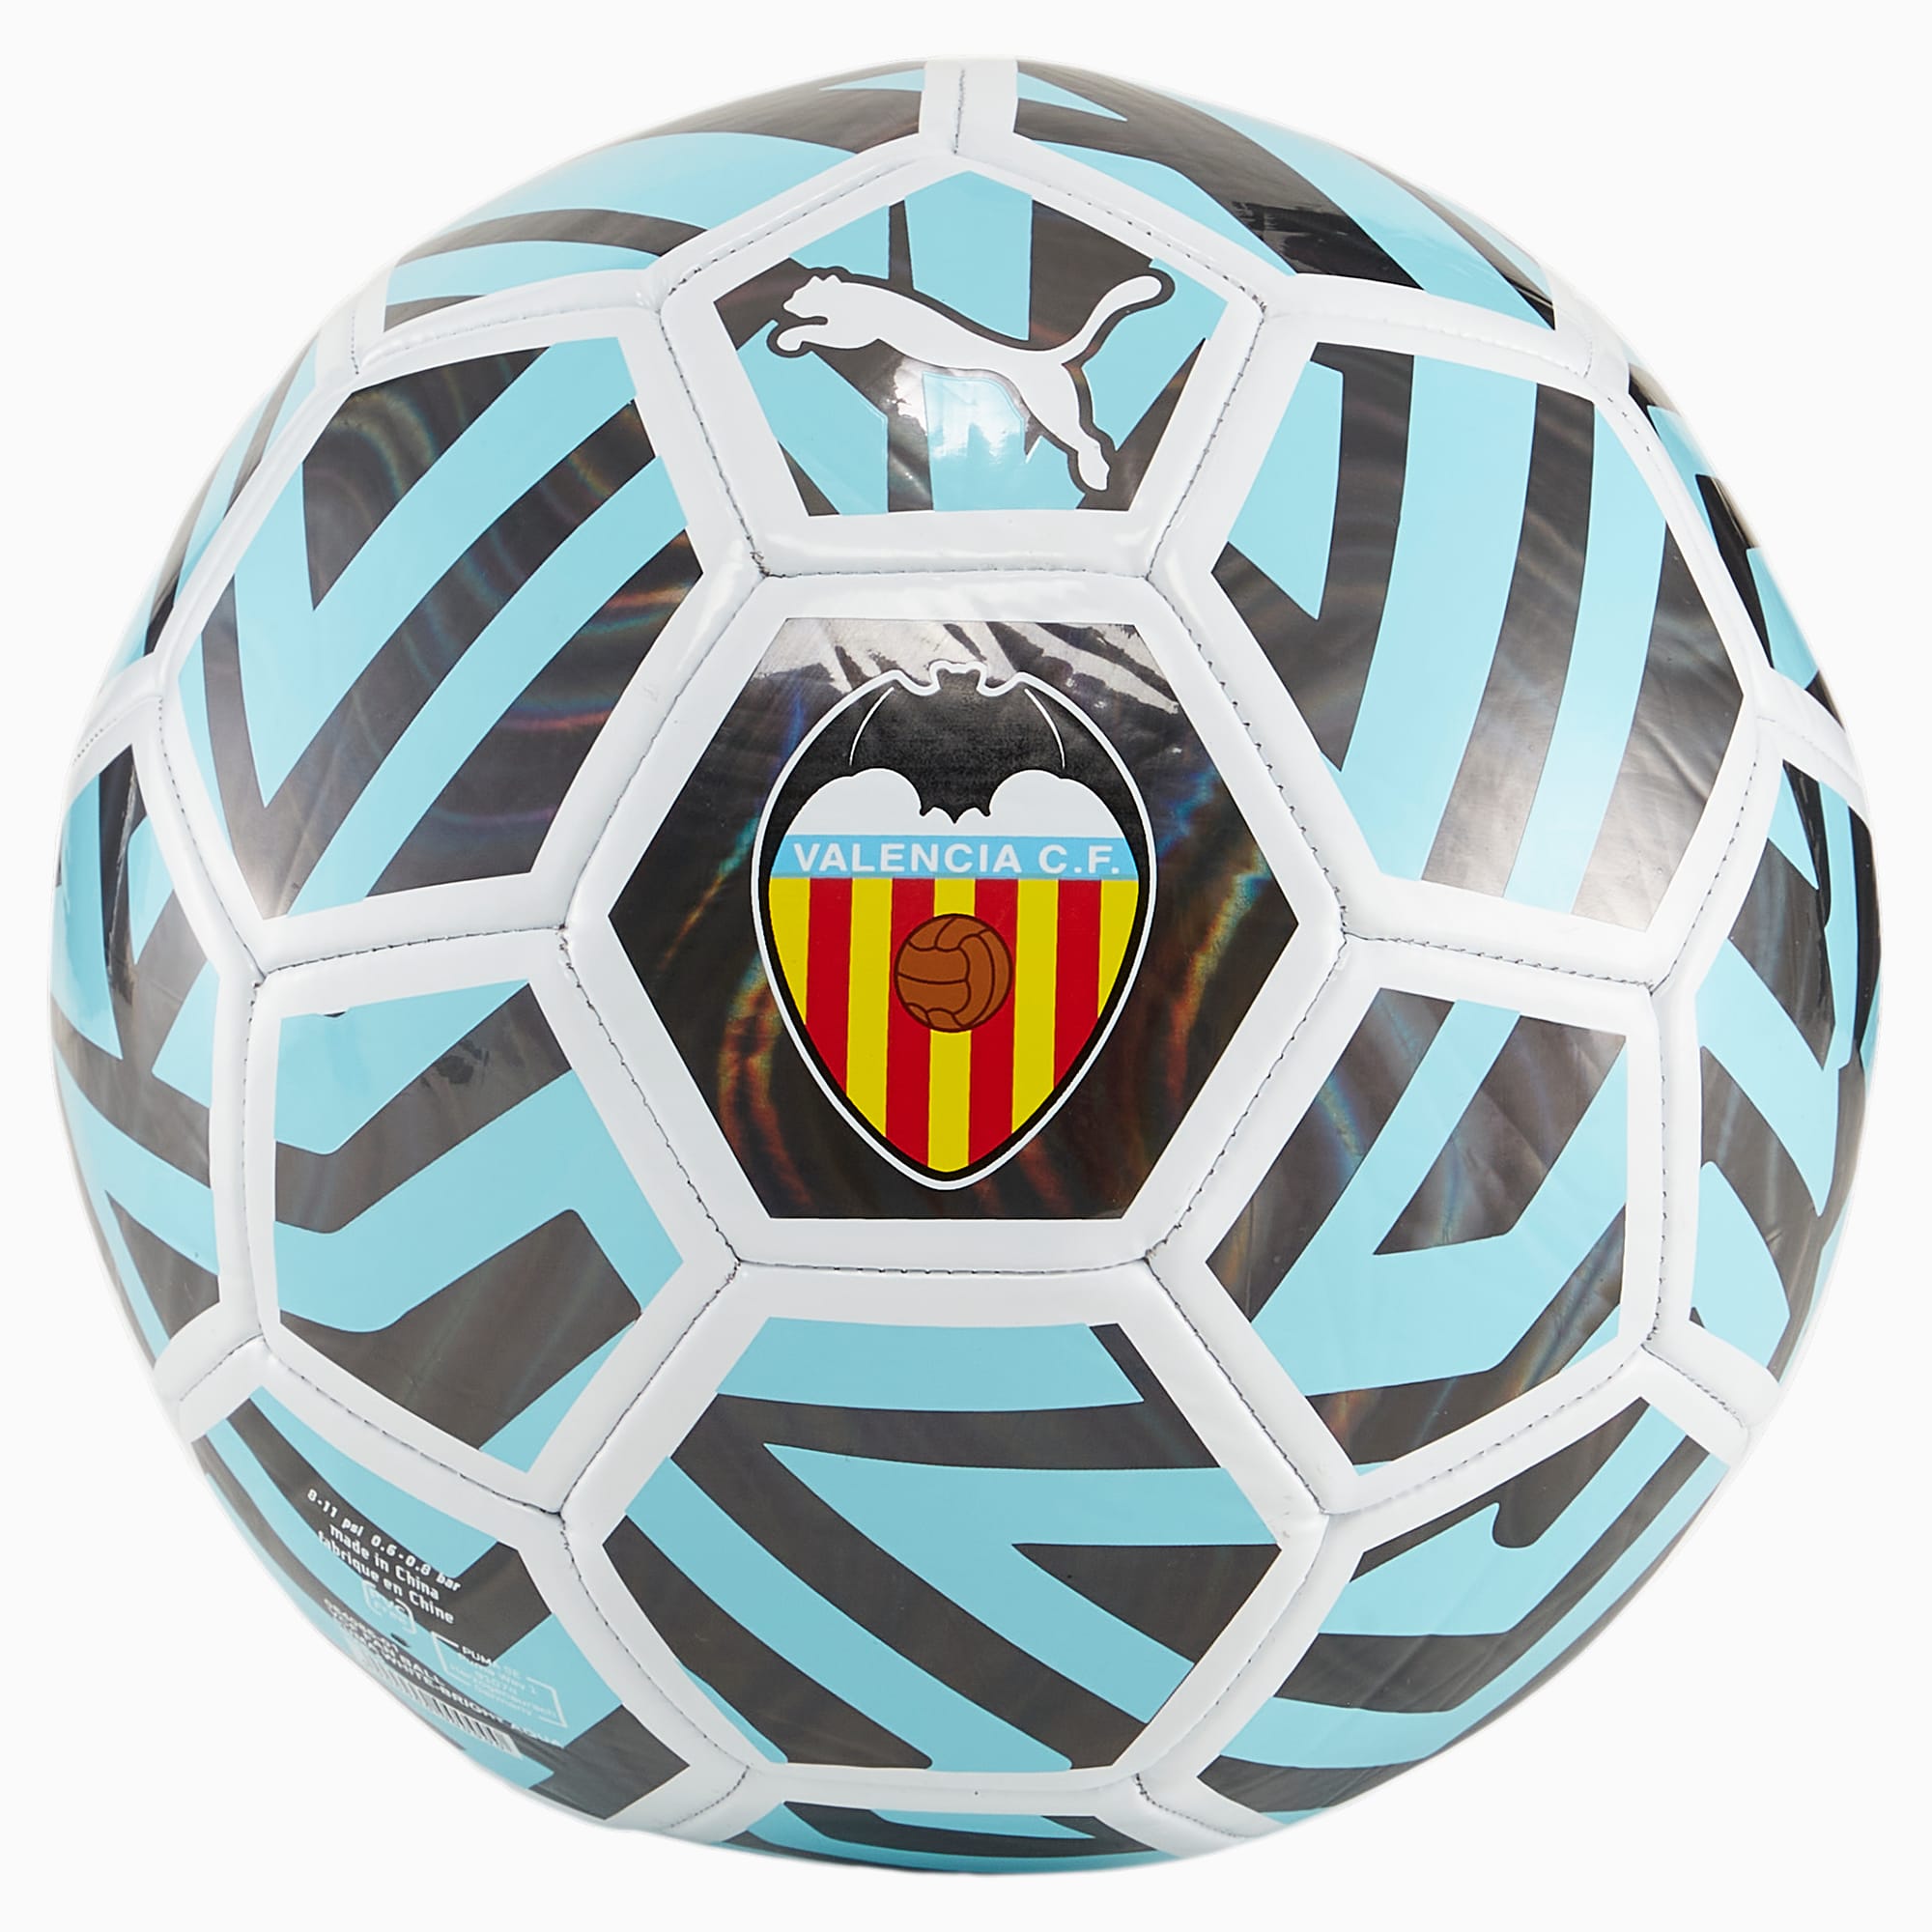 Balon de futbol valencia cf